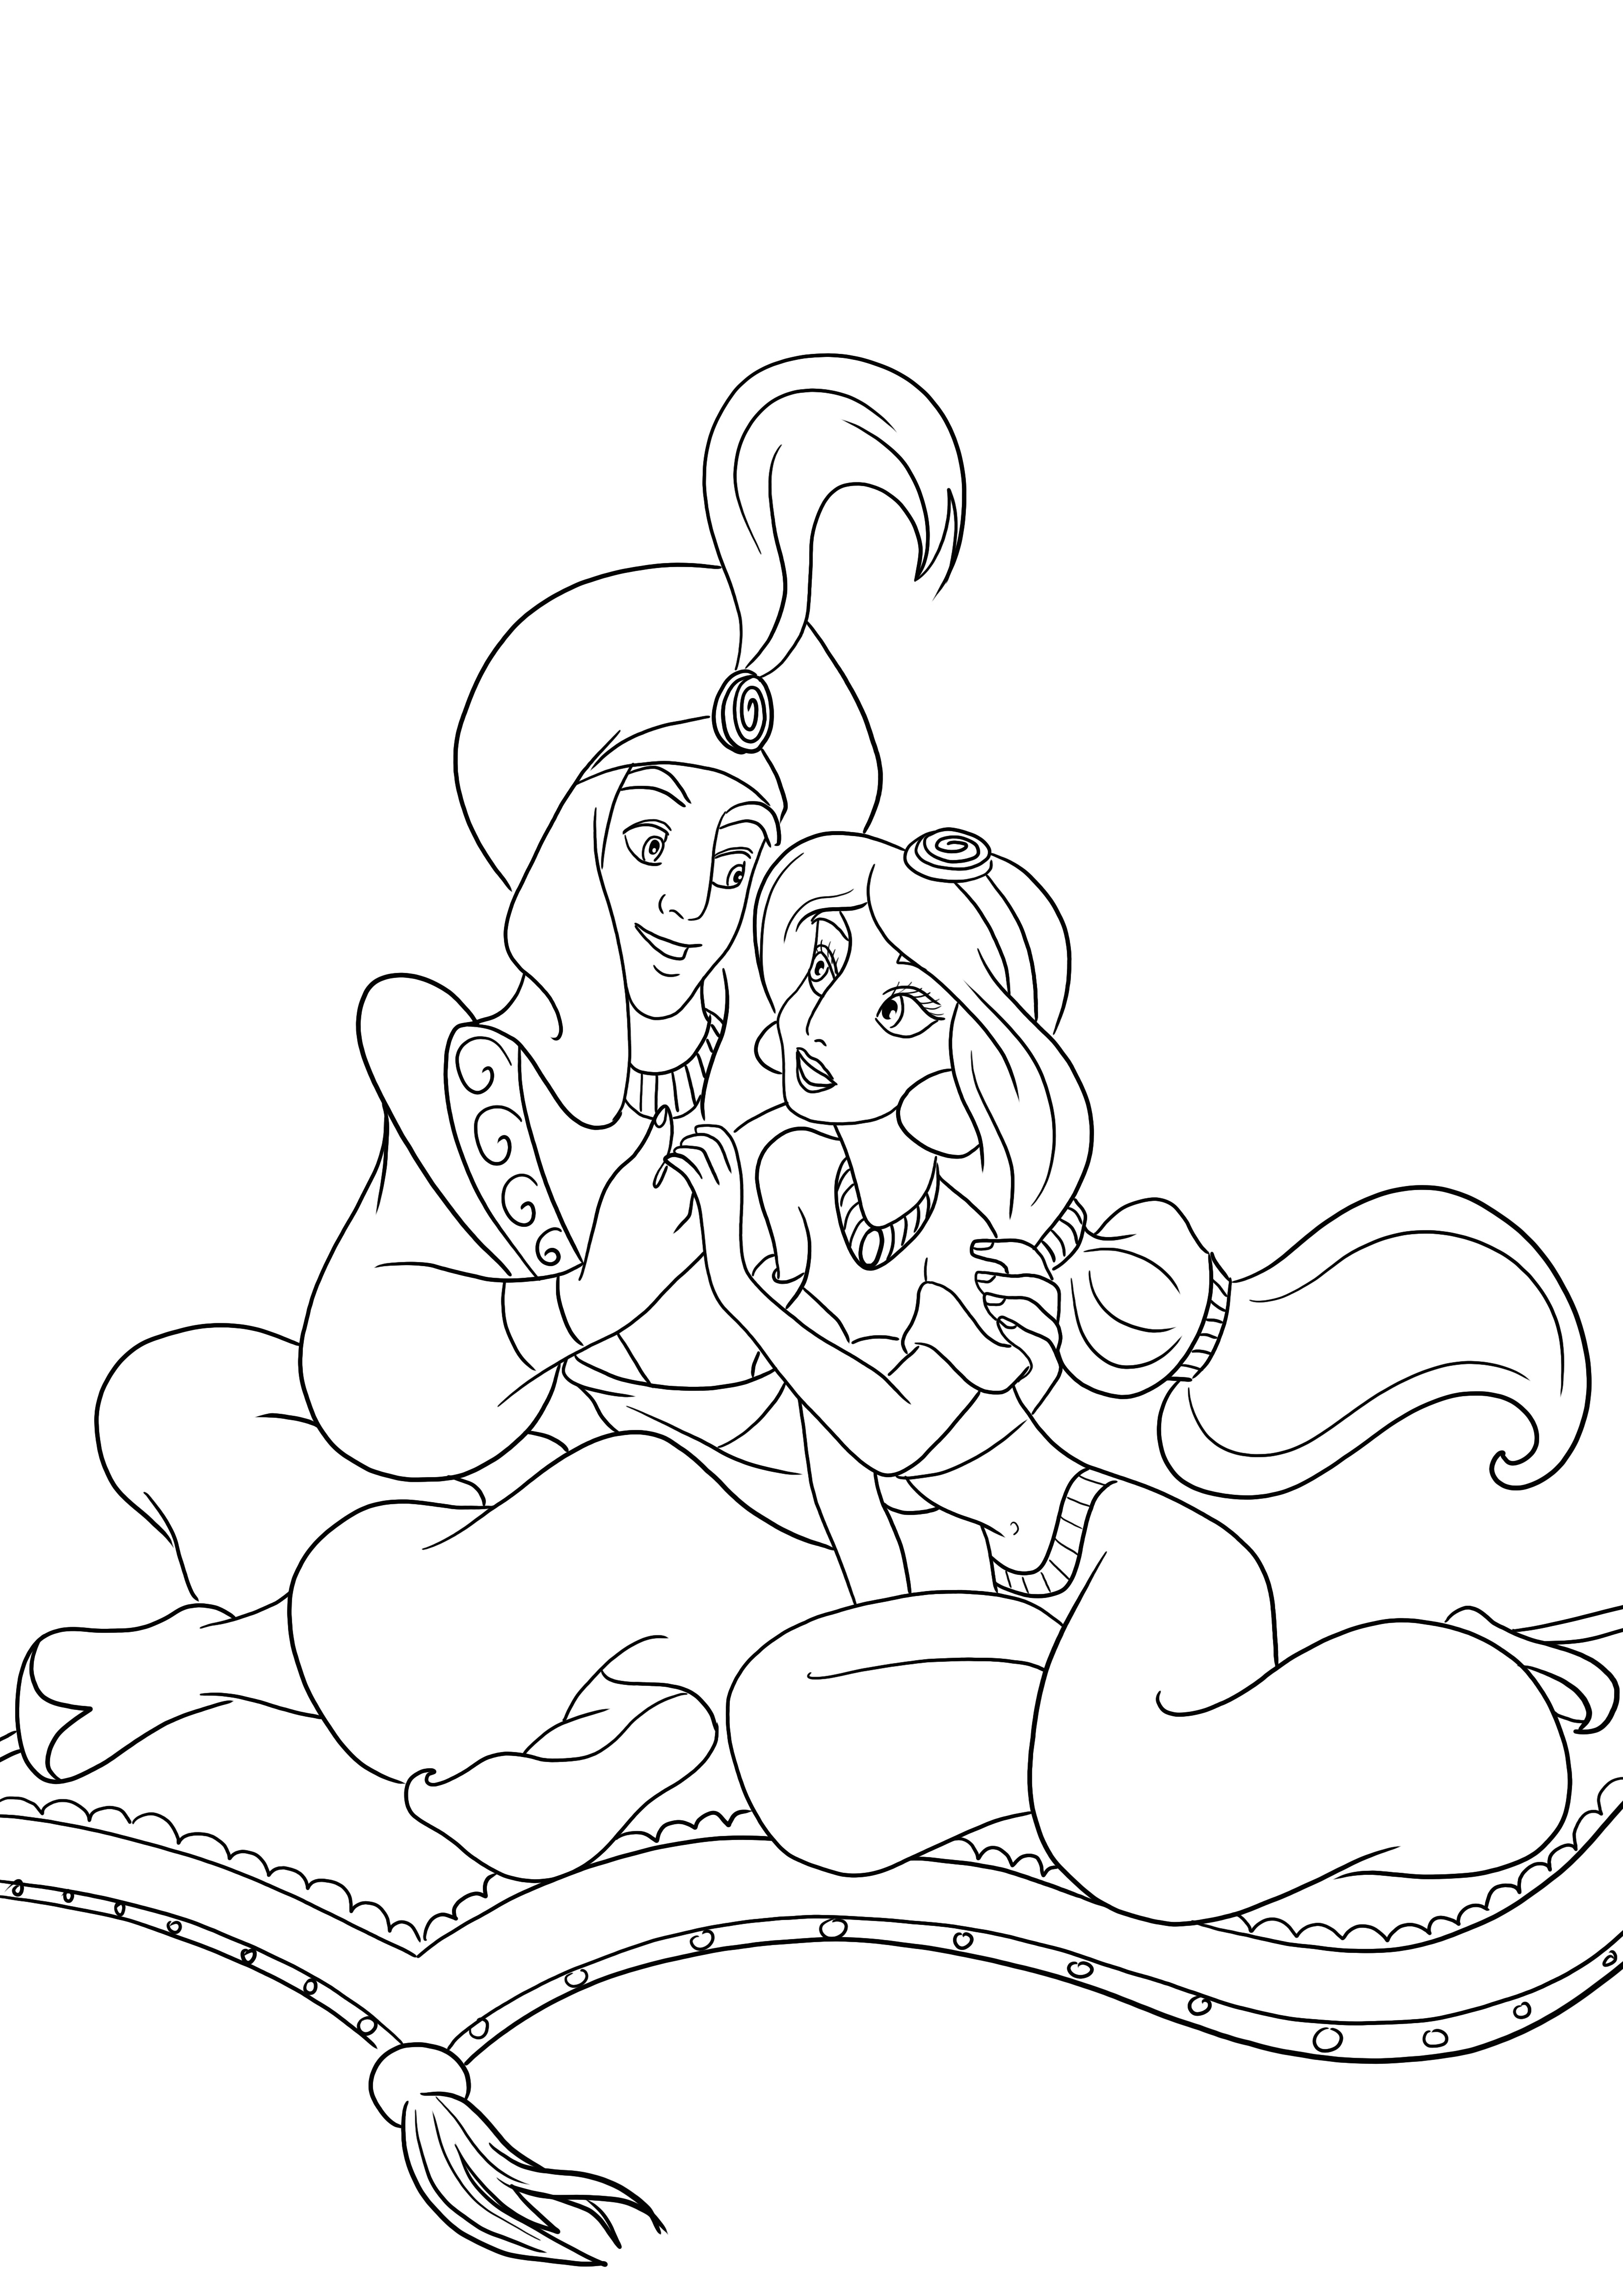 Aladdin ja Jasmine ovat rakastuneita ja valmiita väritykseen ja painatukseen